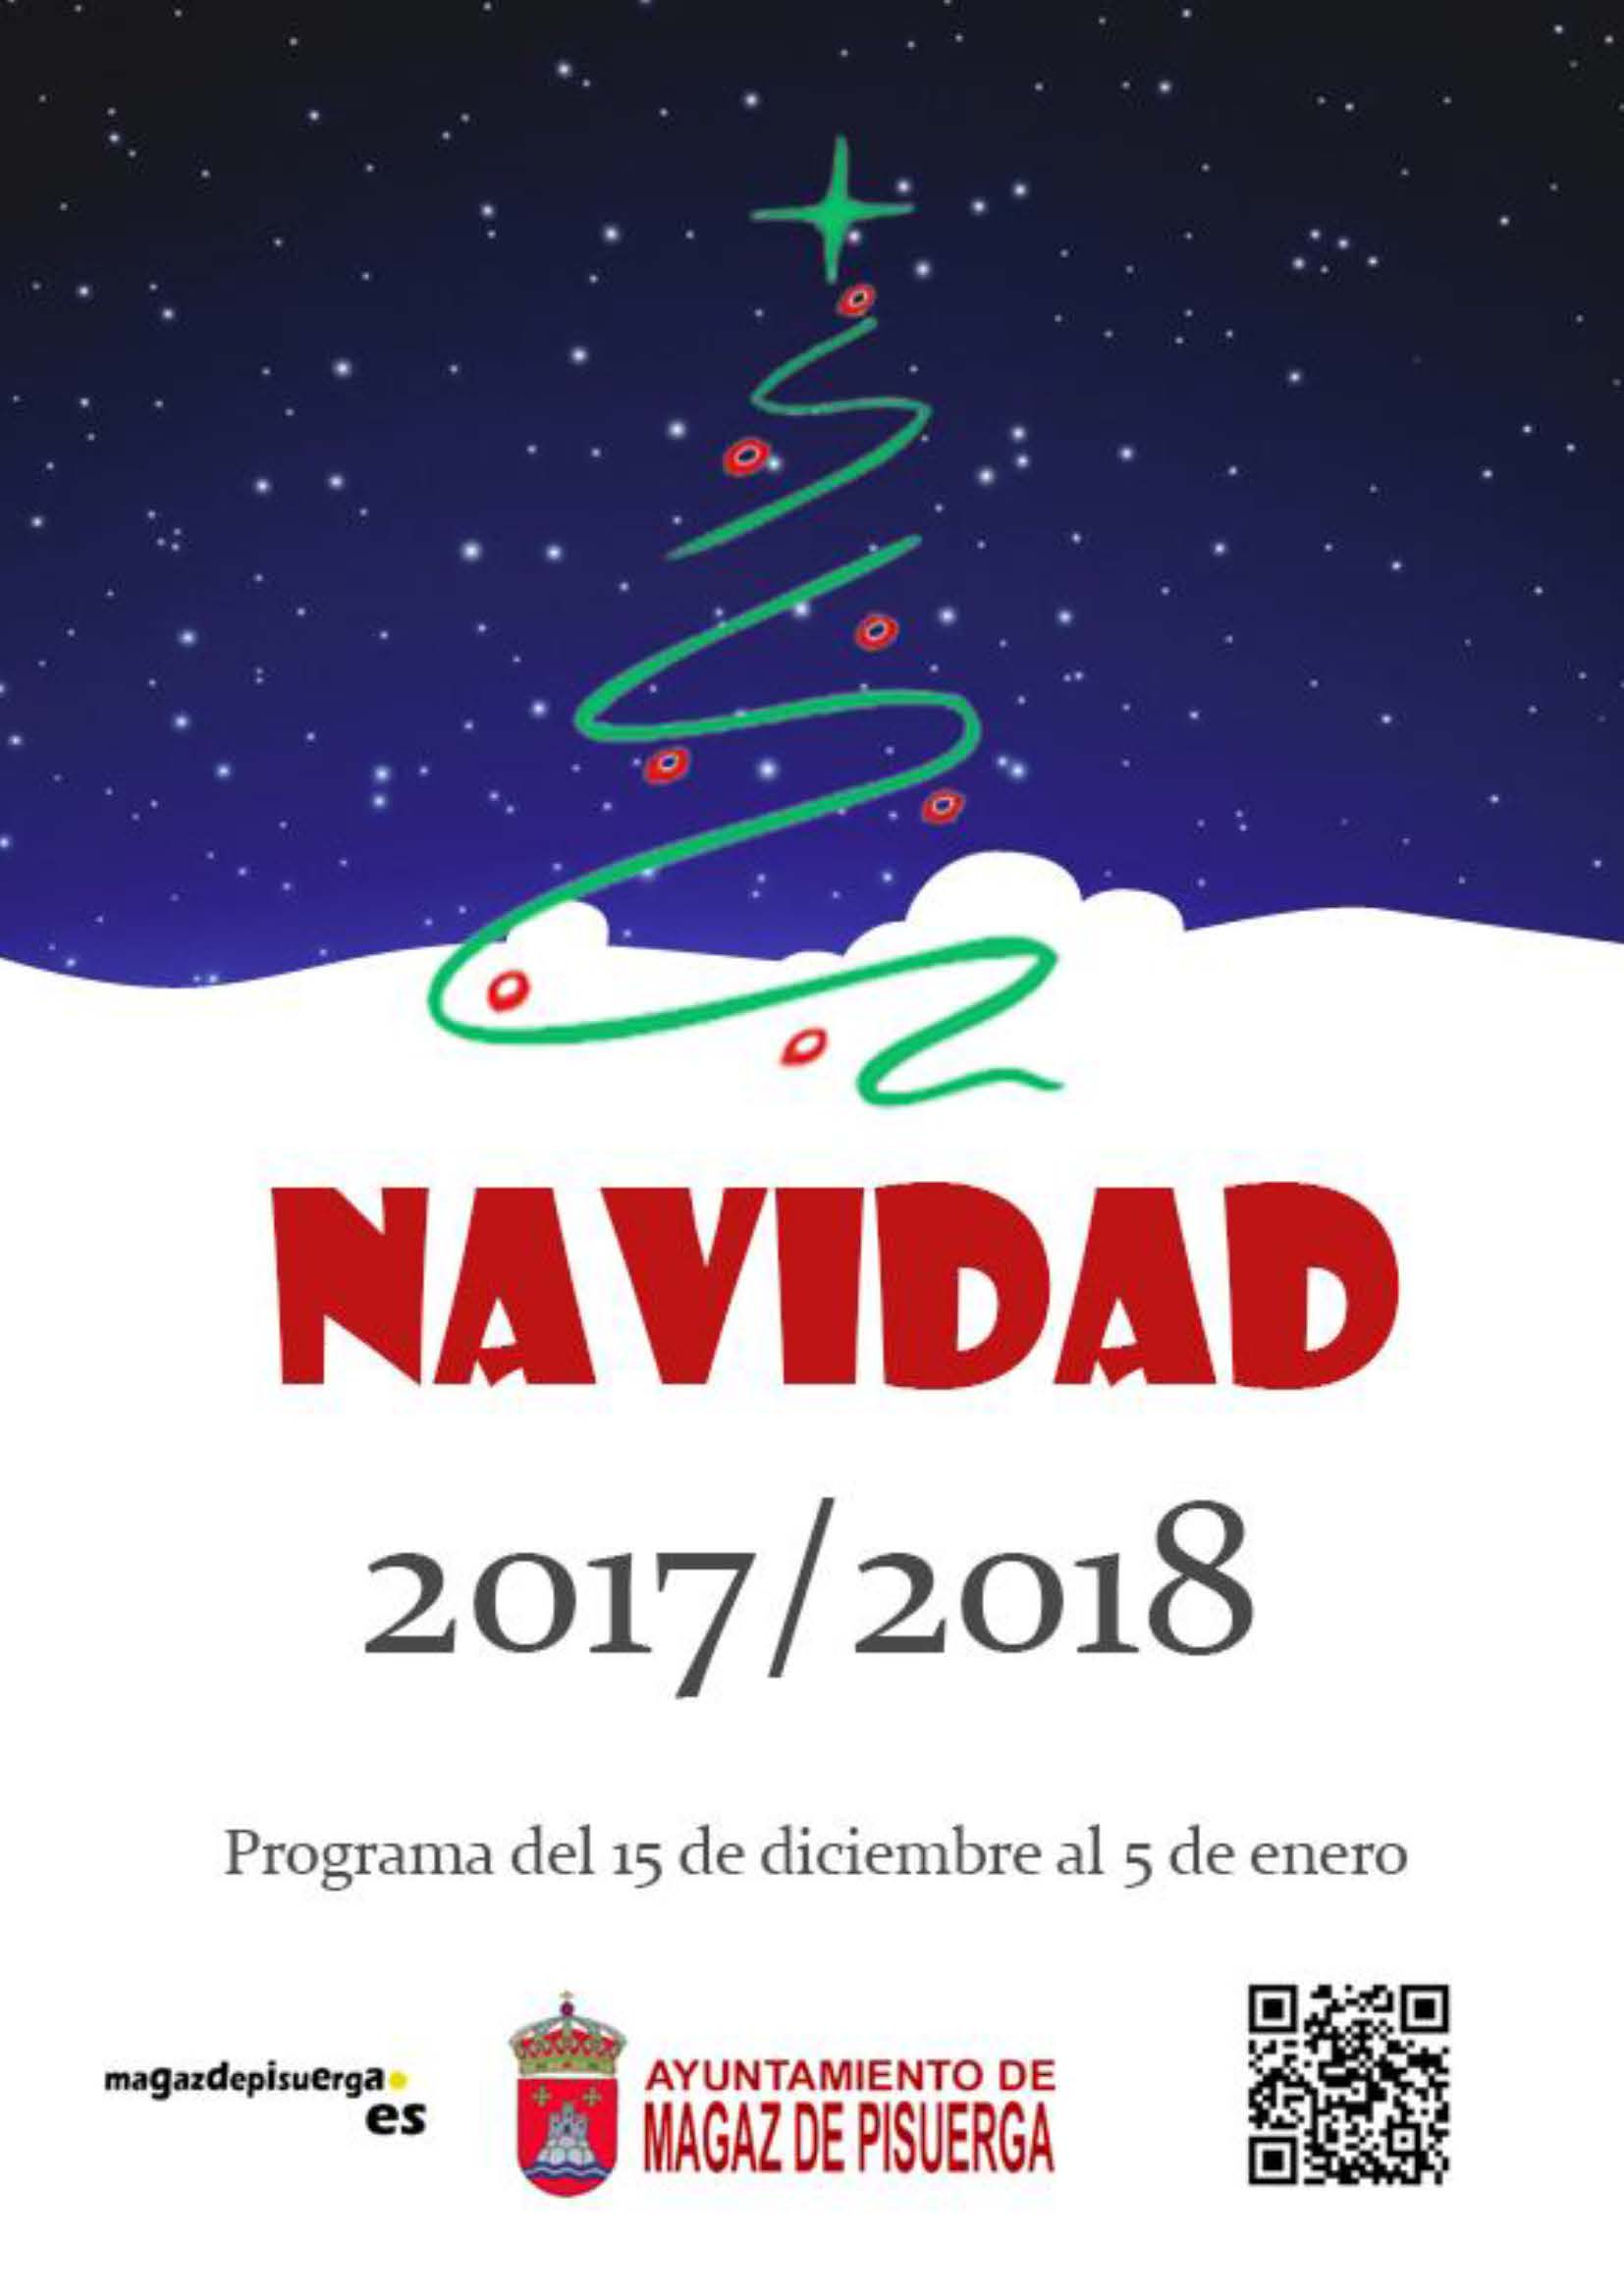 Programa de Navidad 2017/2018